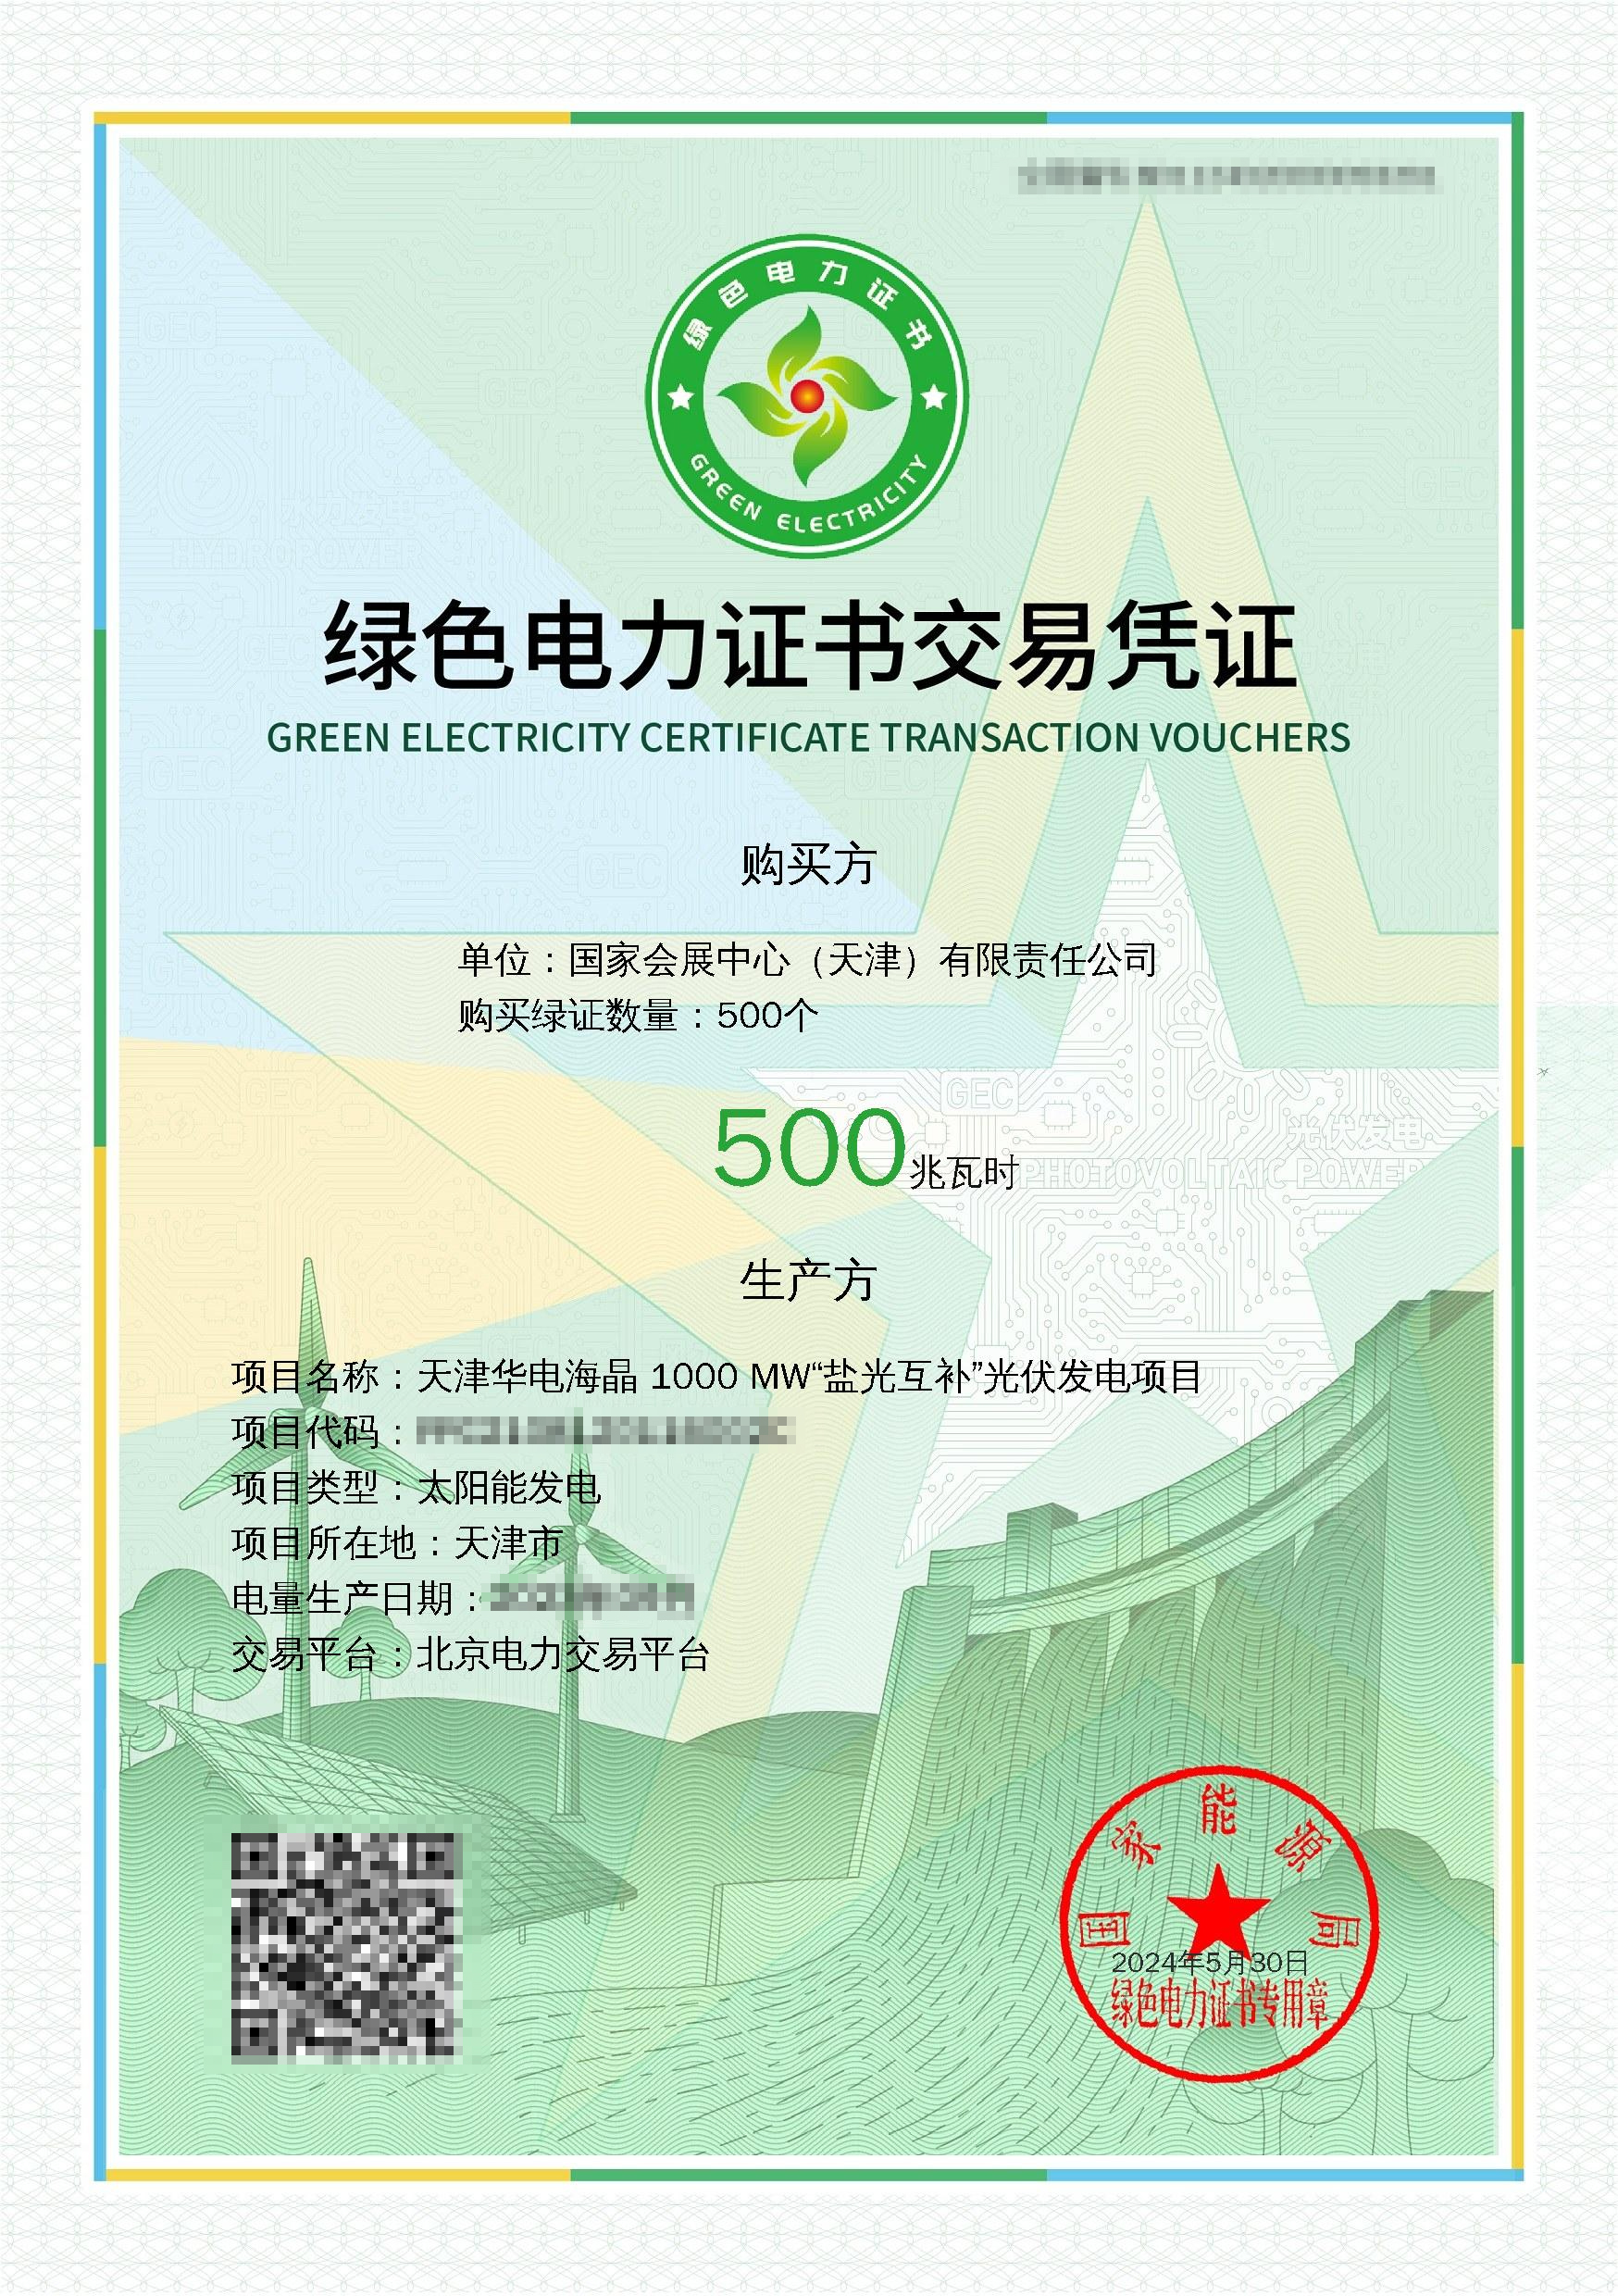 展览会取得的绿色电力文凭往复左证（央广网发 天津市绿电绿证劳动中心供图）